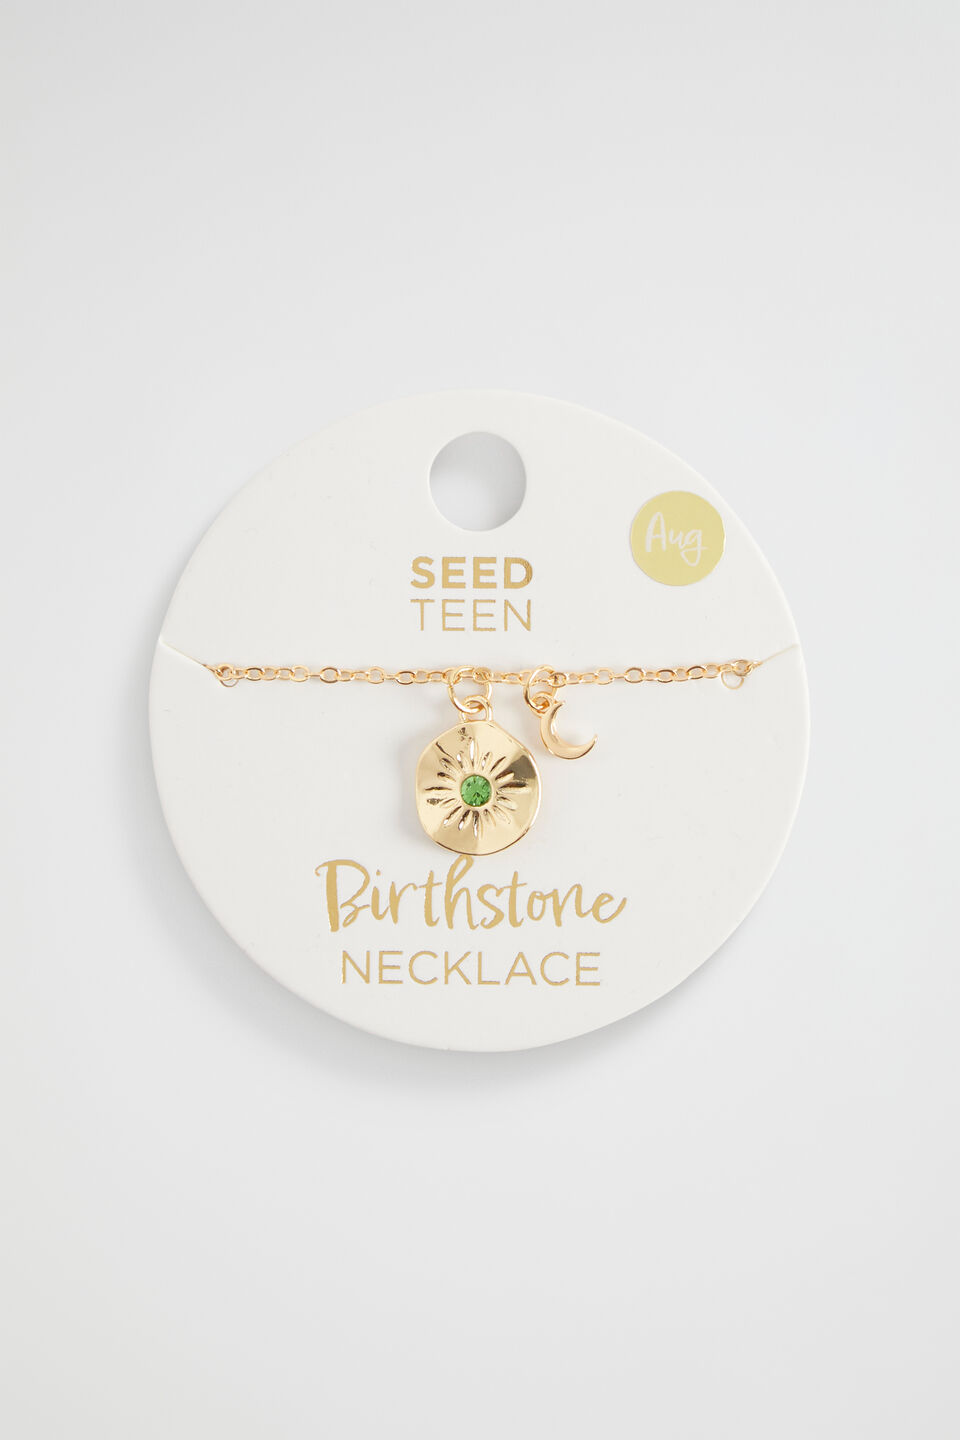 Birthstone Necklace  August